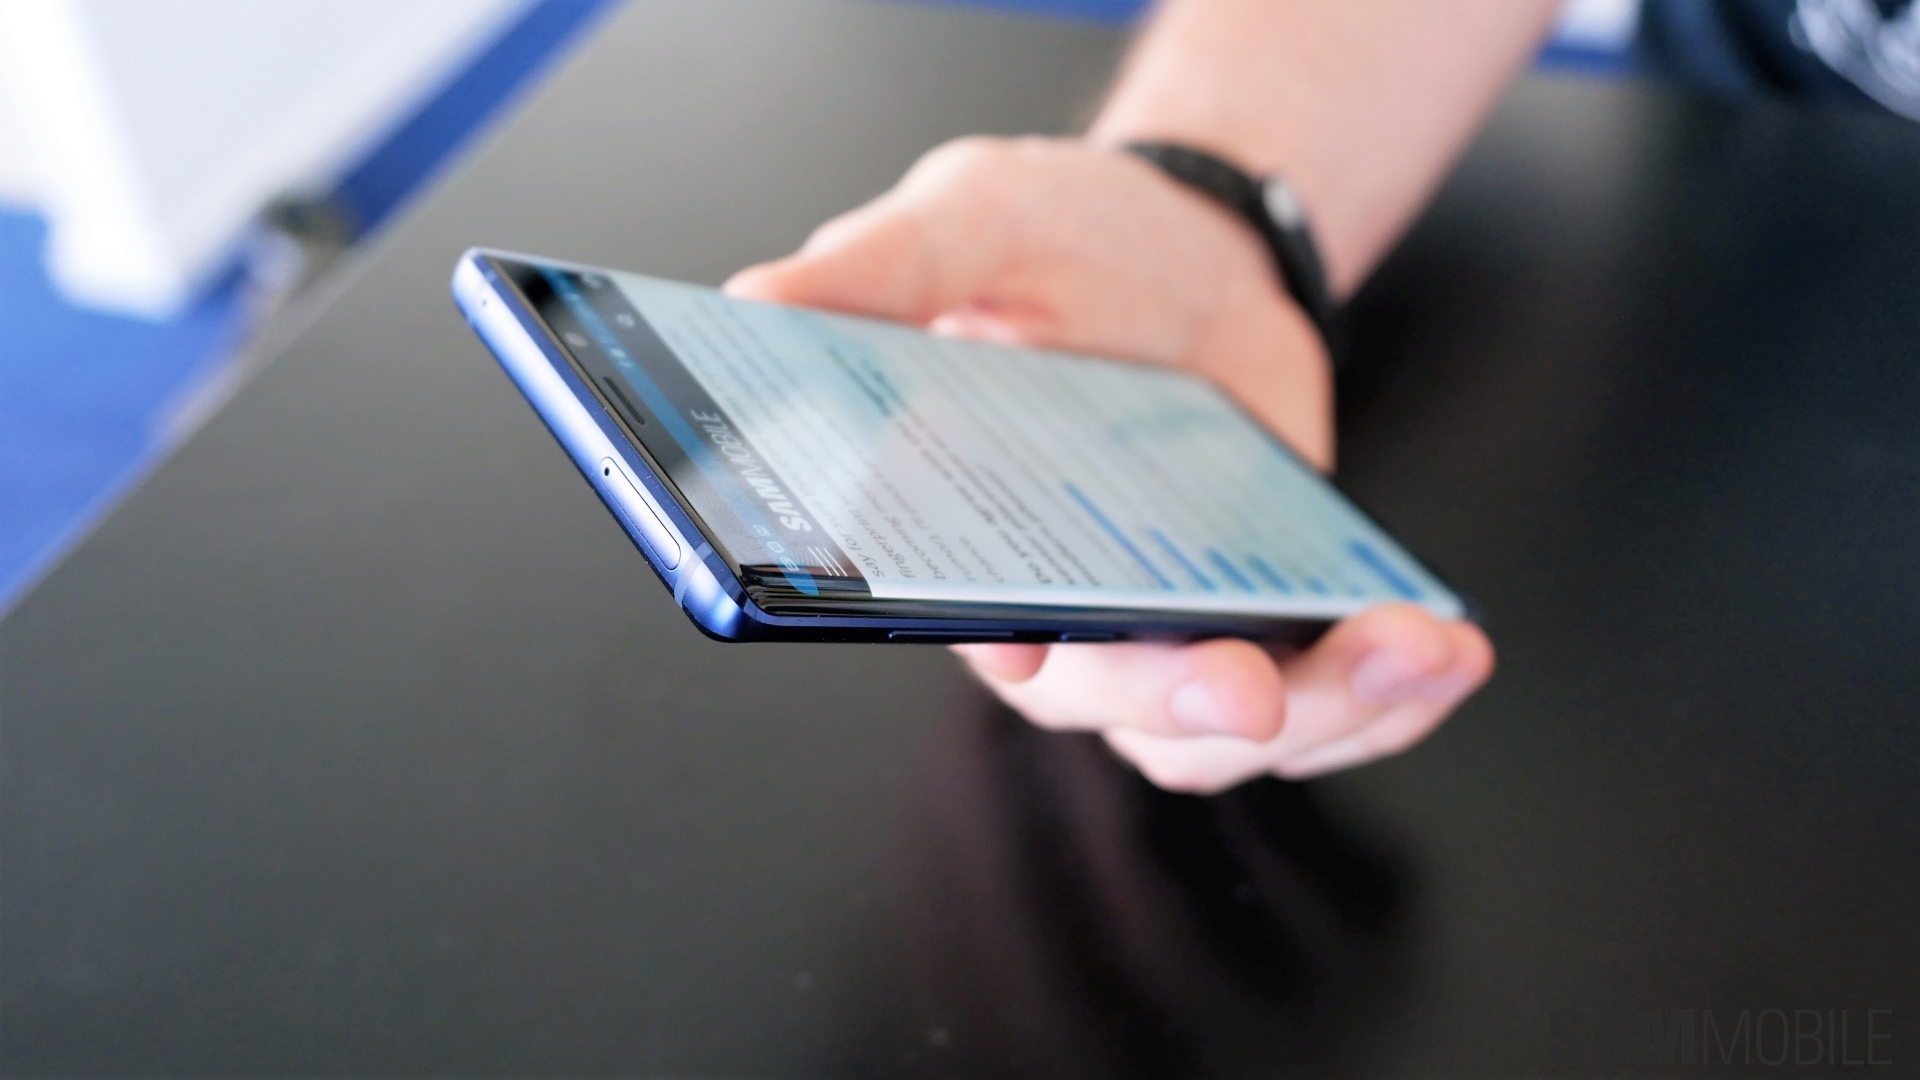 Samsung Galaxy Note 10+ 5G -  External Reviews